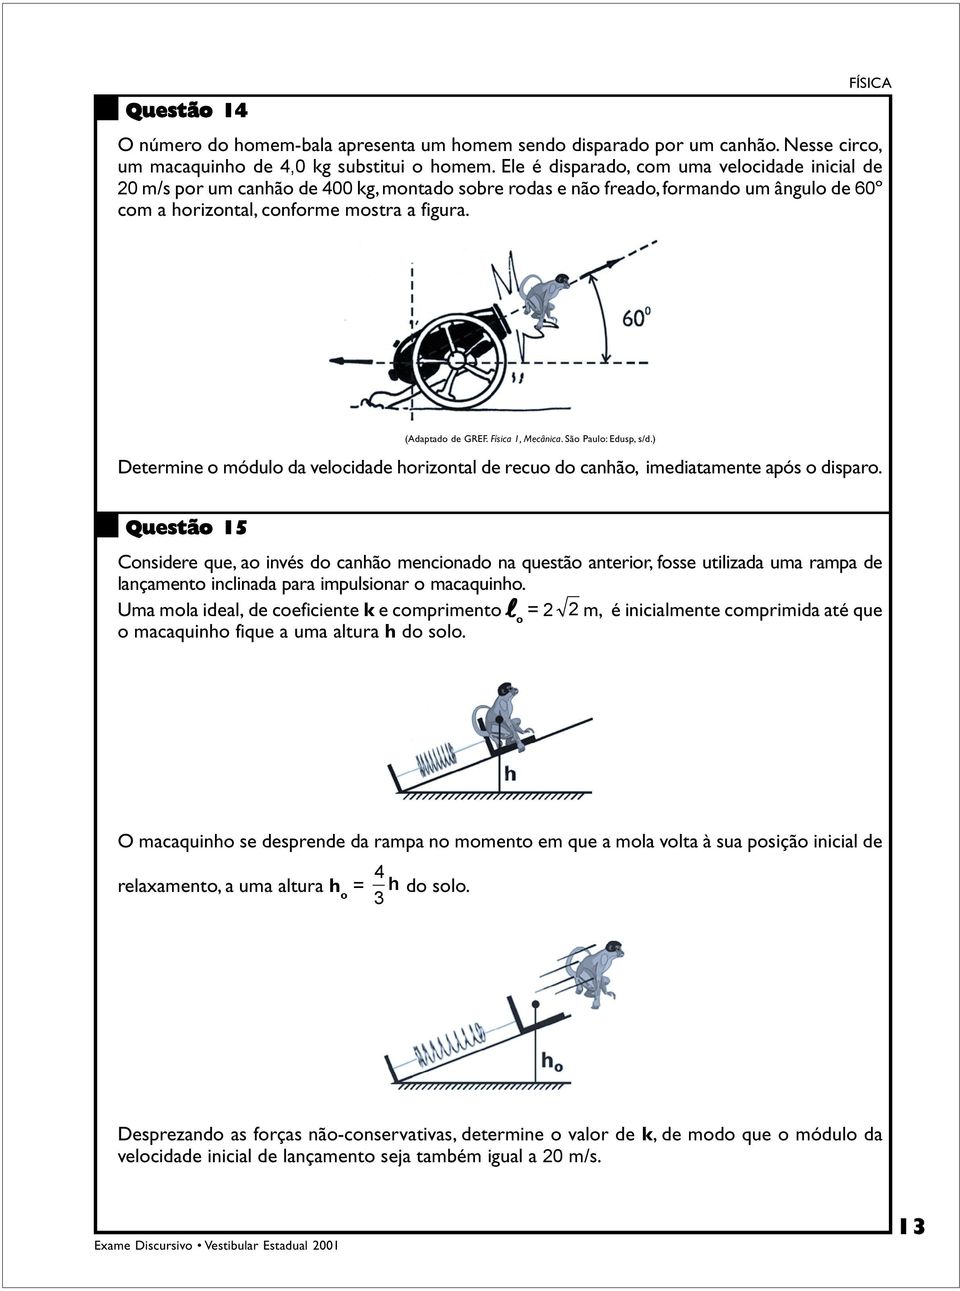 (Adaptado de GREF. Física 1, Mecânica. São Paulo: Edusp, s/d.) Determine o módulo da velocidade horizontal de recuo do canhão, imediatamente após o disparo.